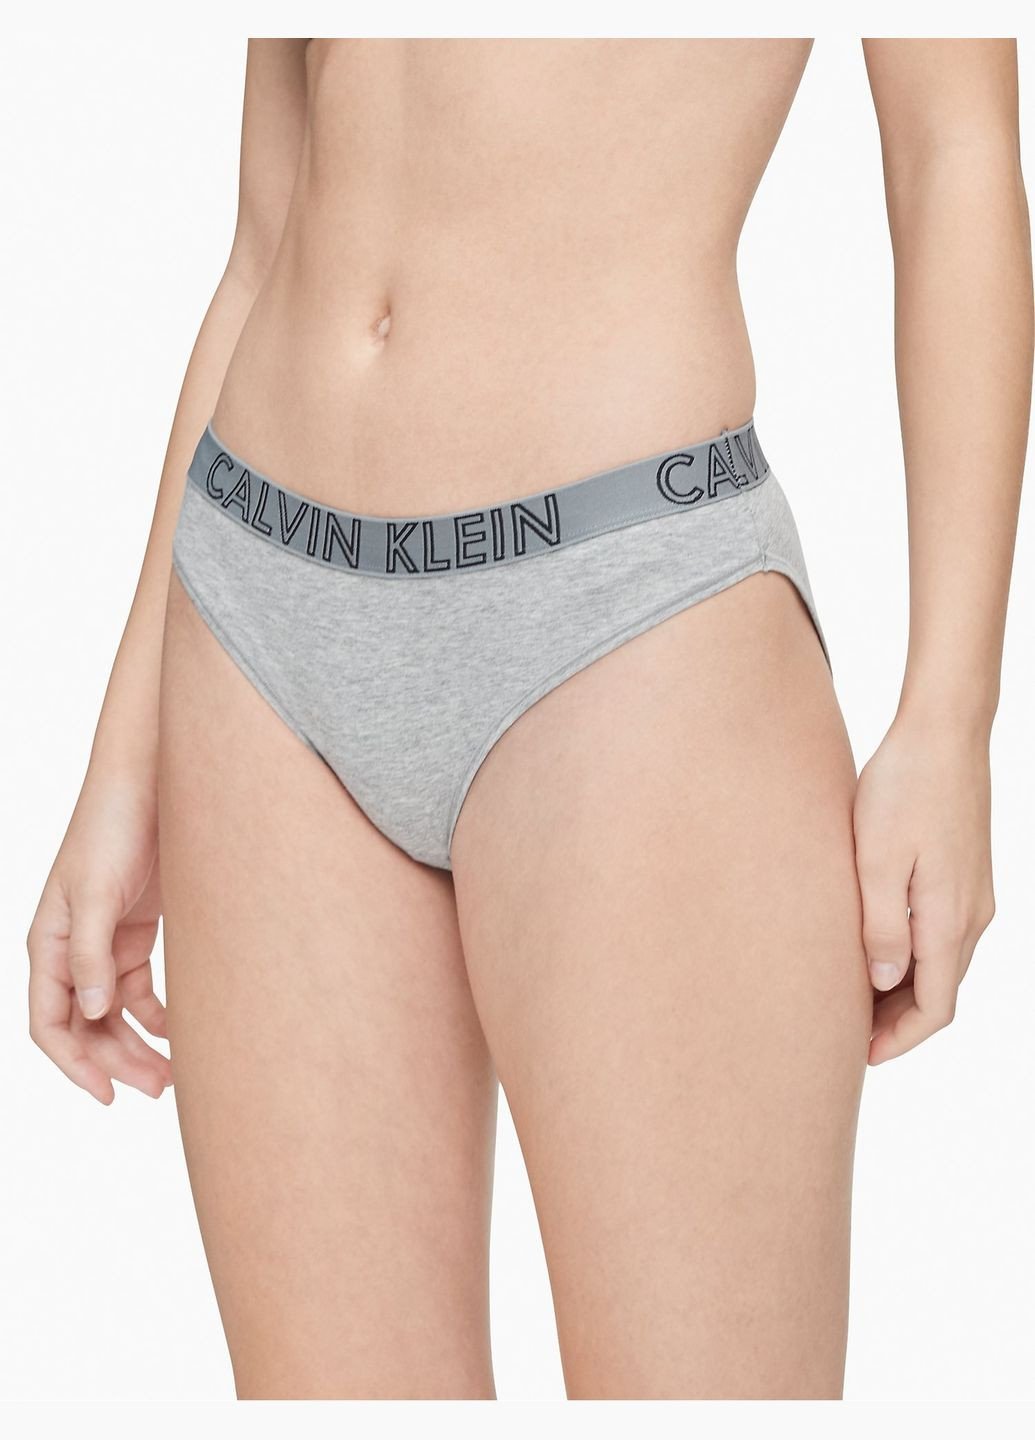 Трусики - жіночі труси CK0406W Calvin Klein (269005109)